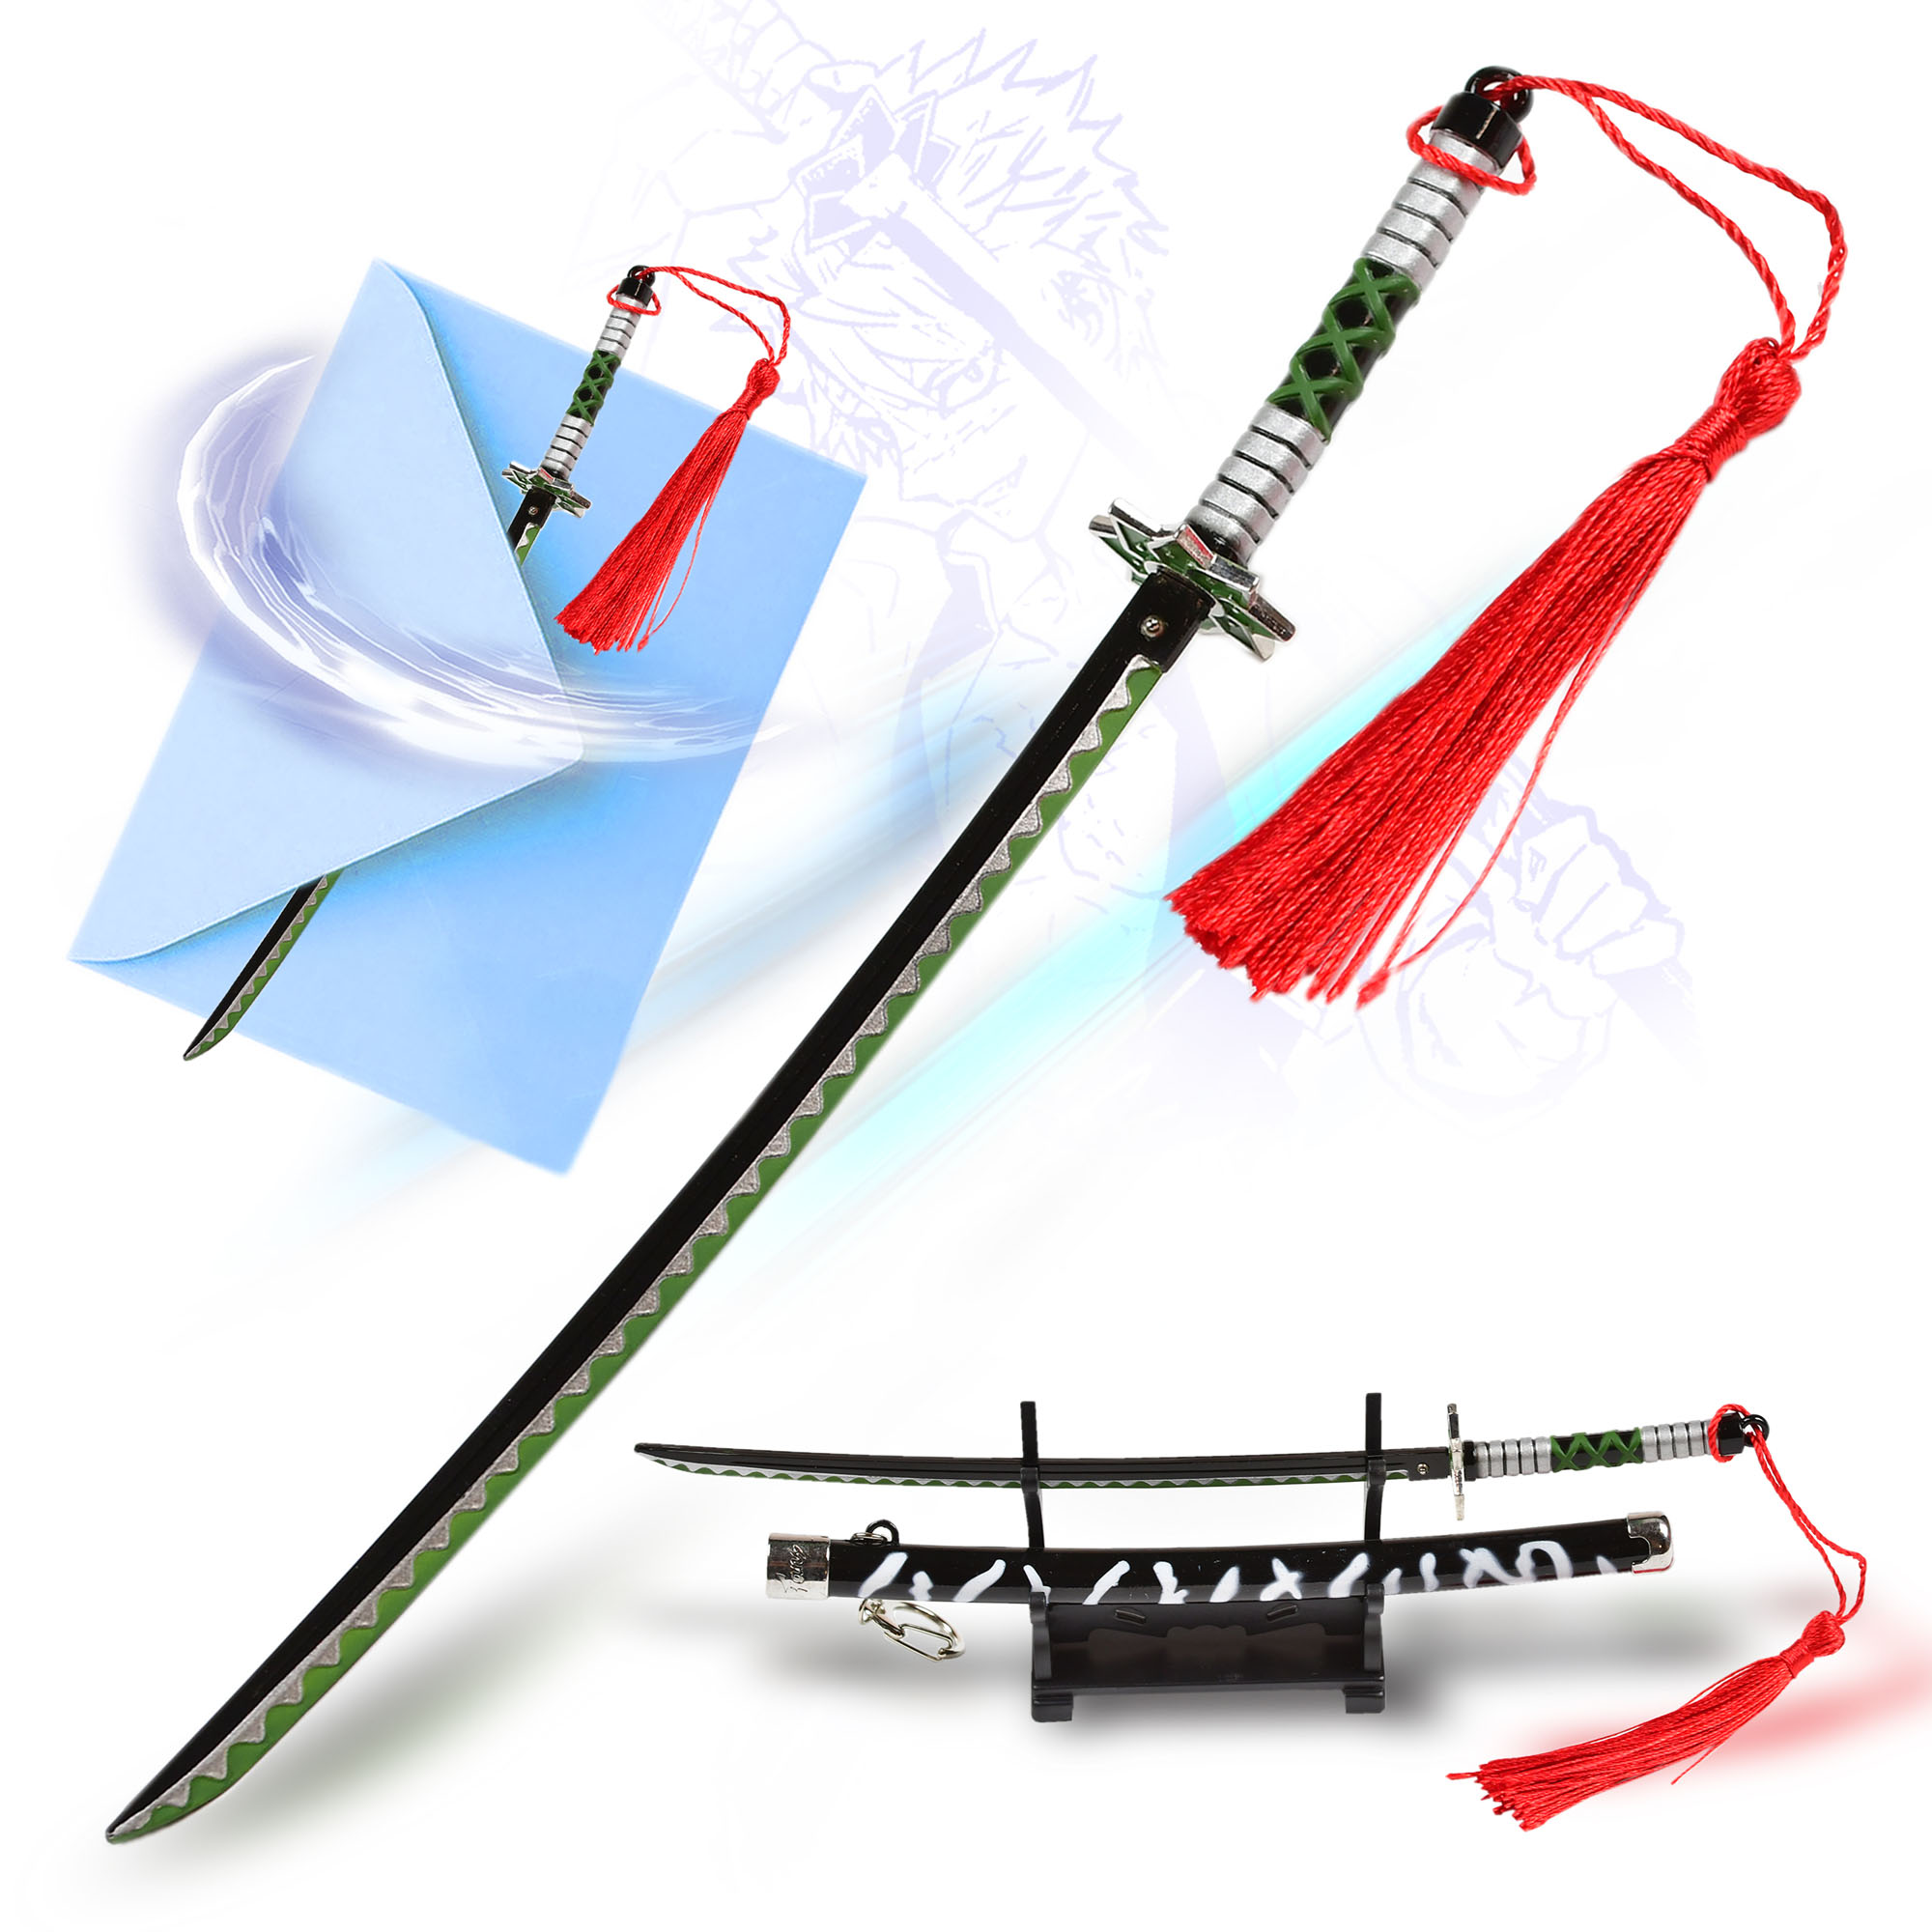 Demon Slayer - Shinazugawa Sanemi Katana Letter Opener Sword with Sheath and Stand